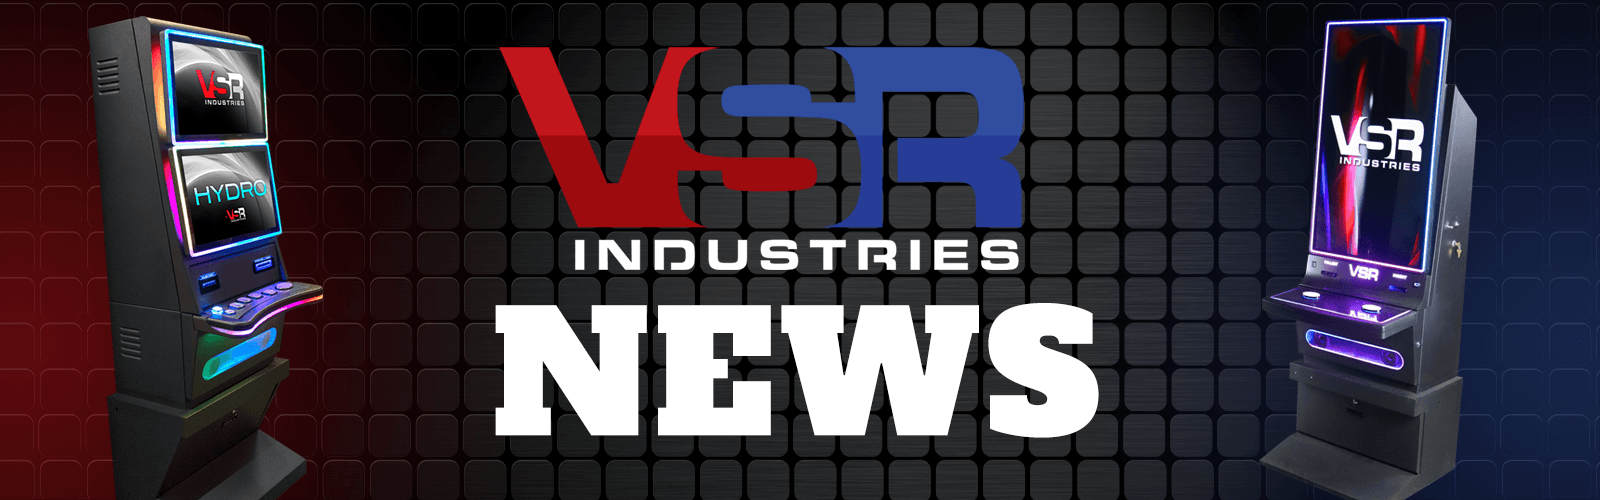 VSR News and Web Blog